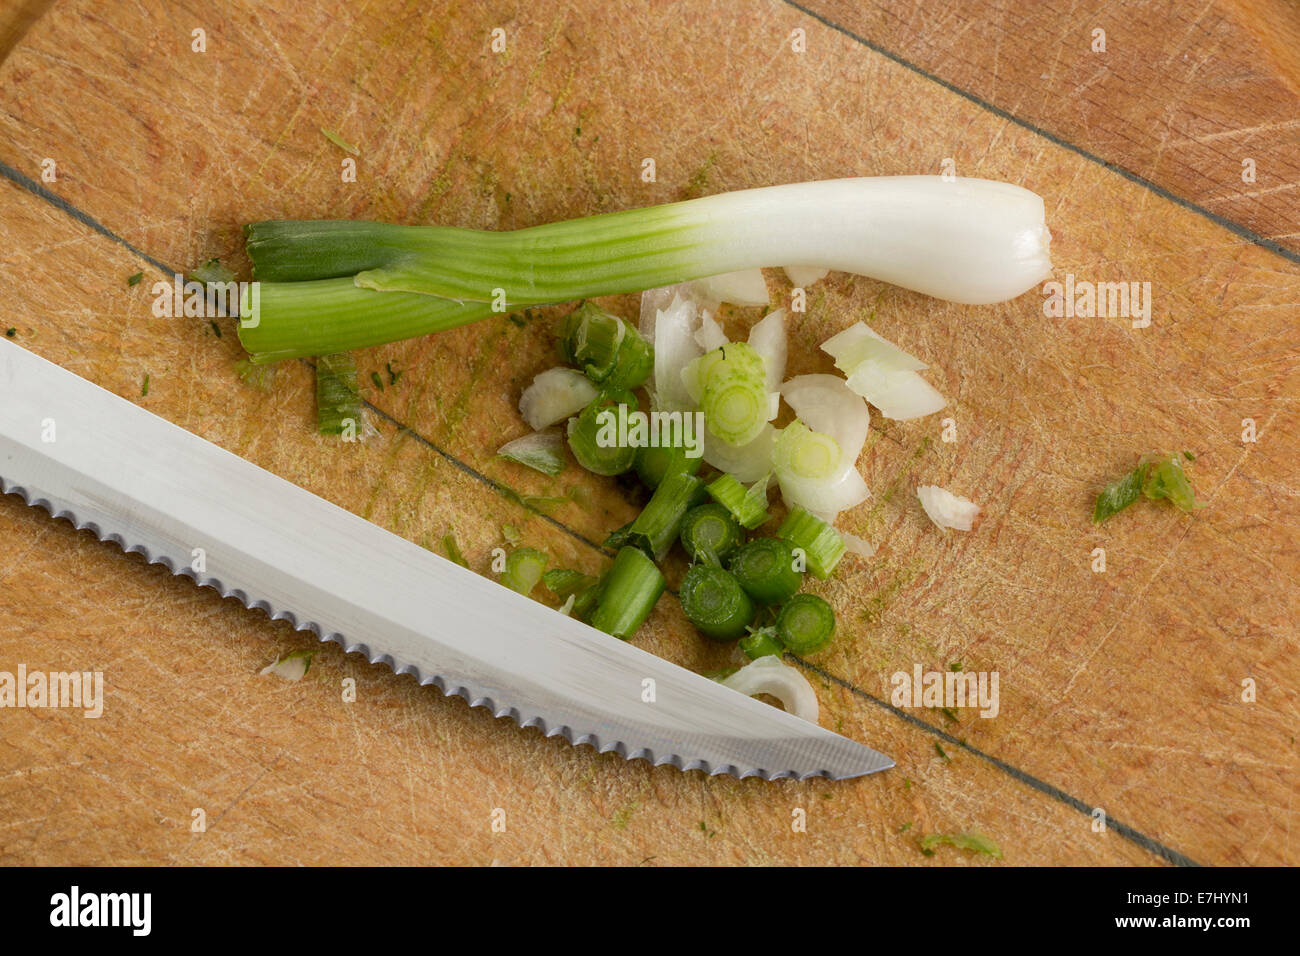 Cebolleta y un cuchillo sobre una tabla para cortar Foto de stock